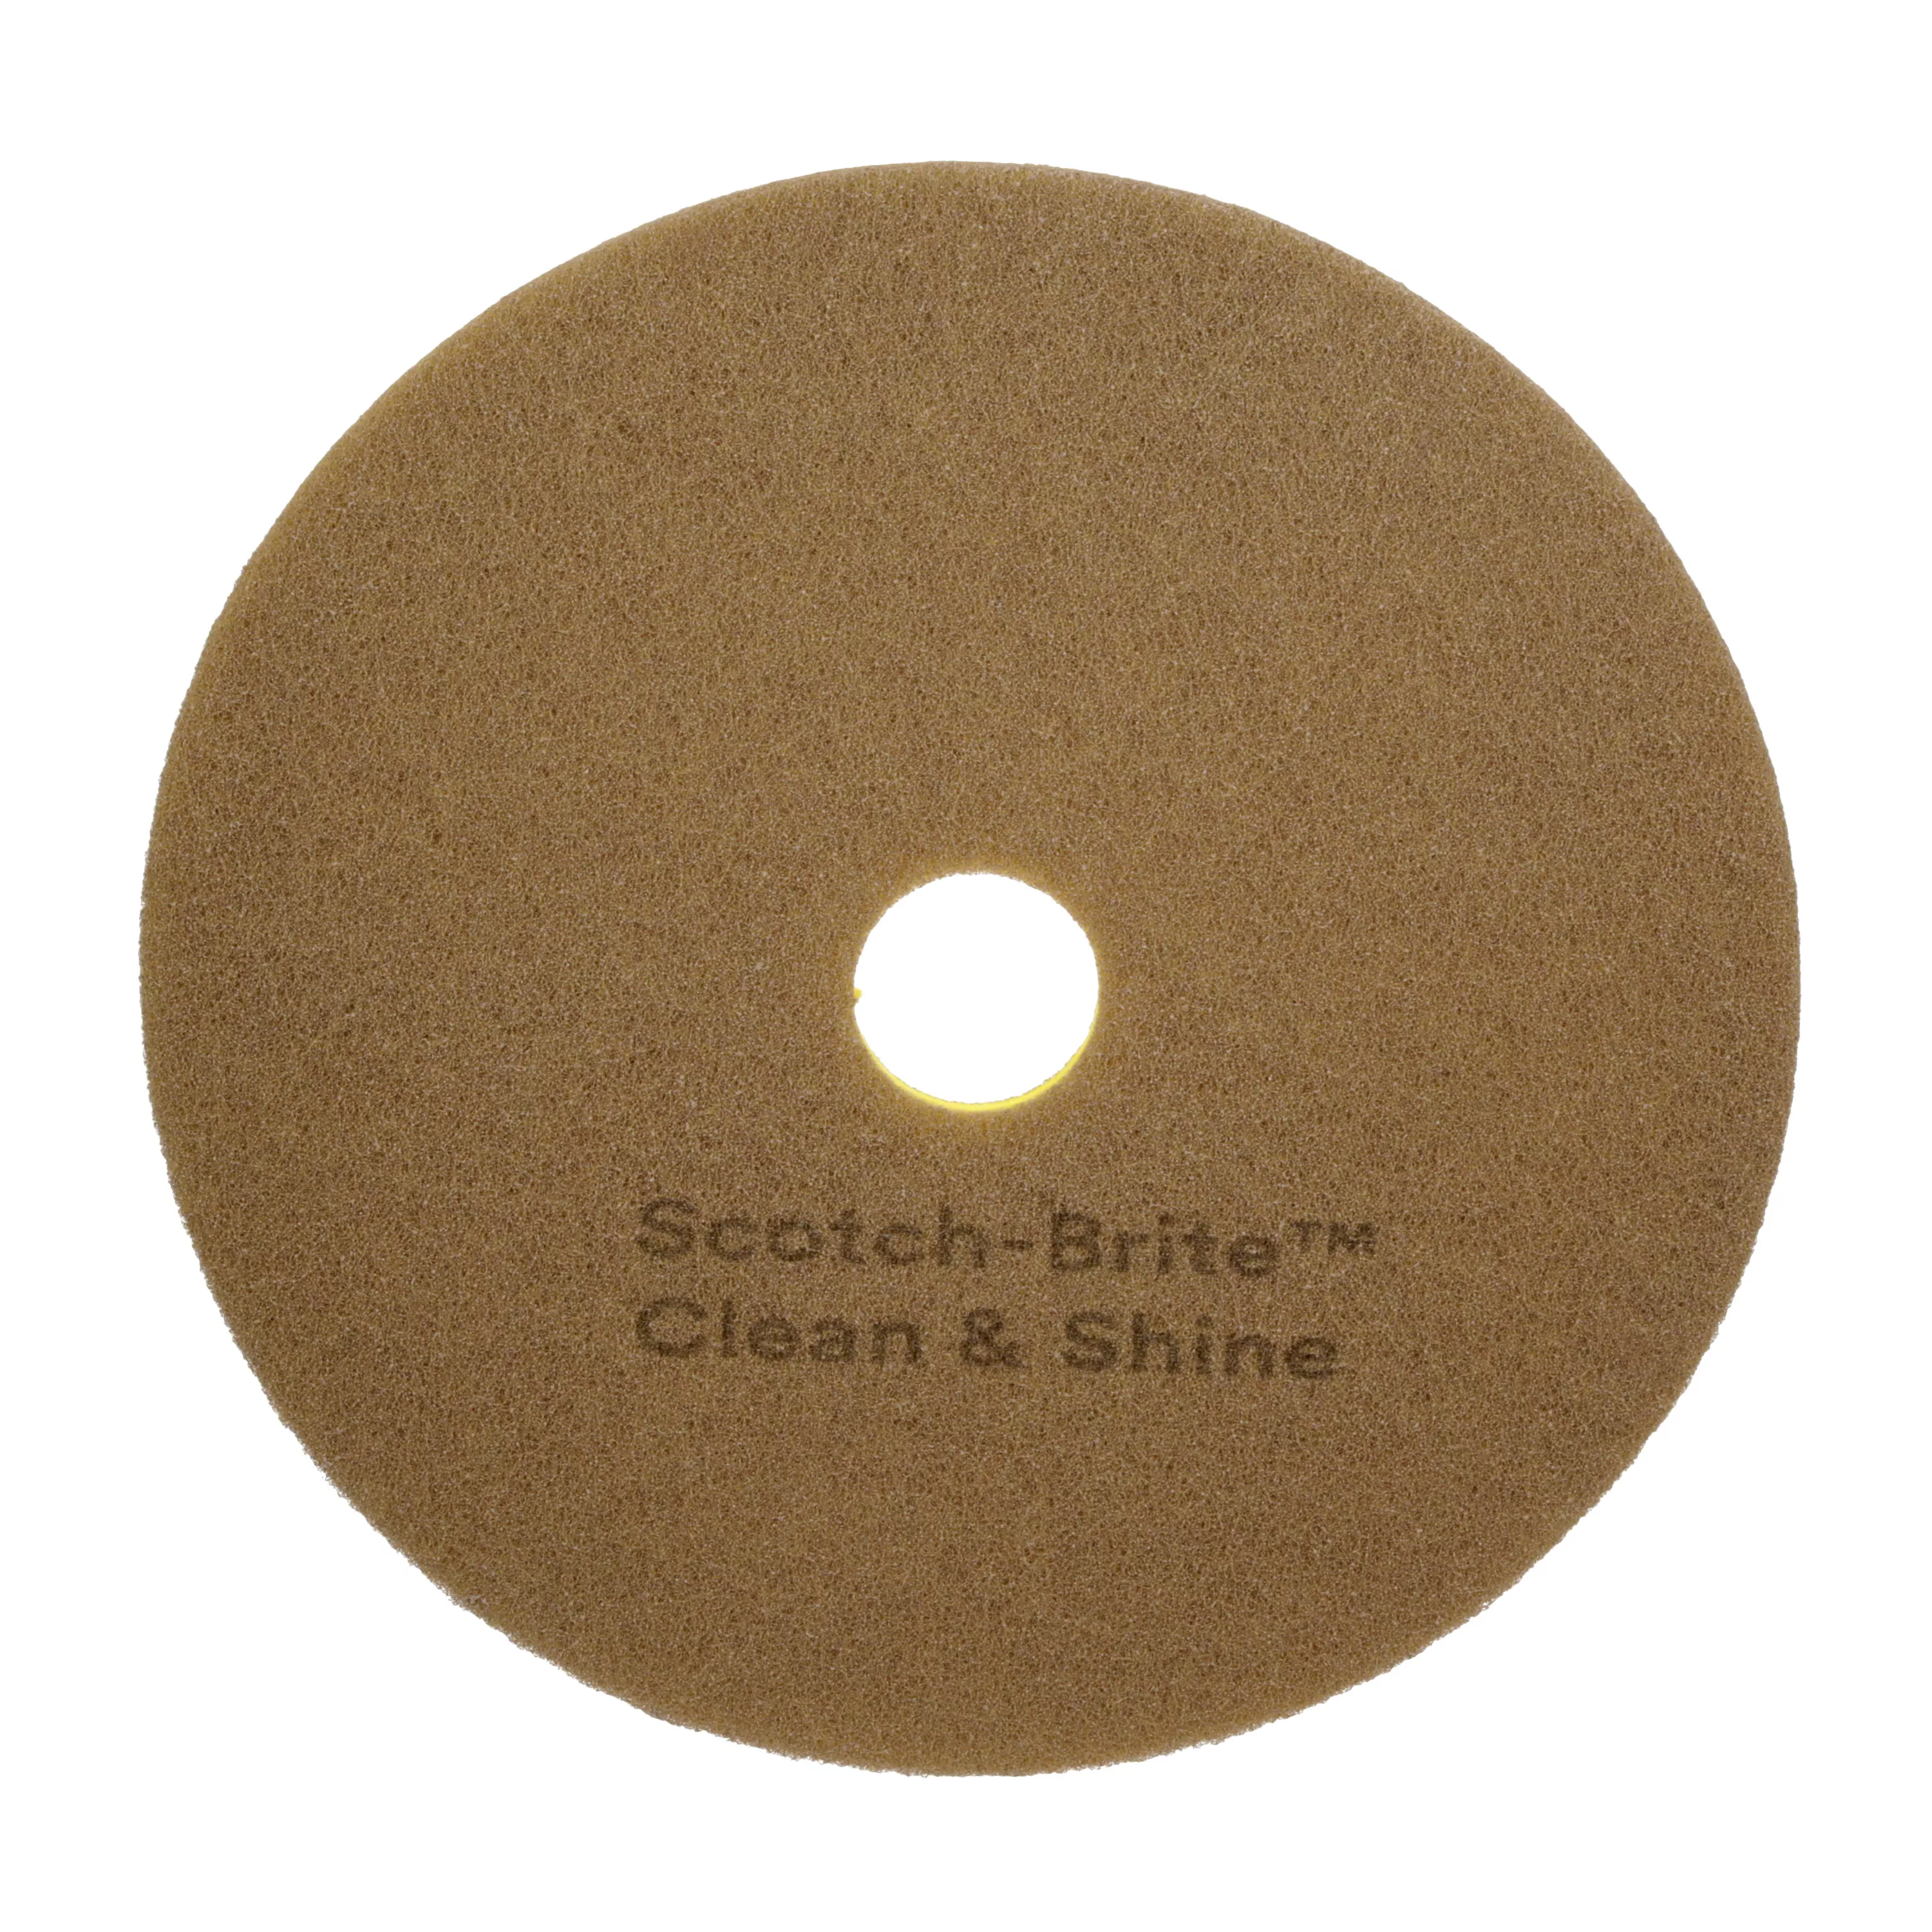 Scotch-Brite™ Clean & Shine Pad, 22 in, 5/Case